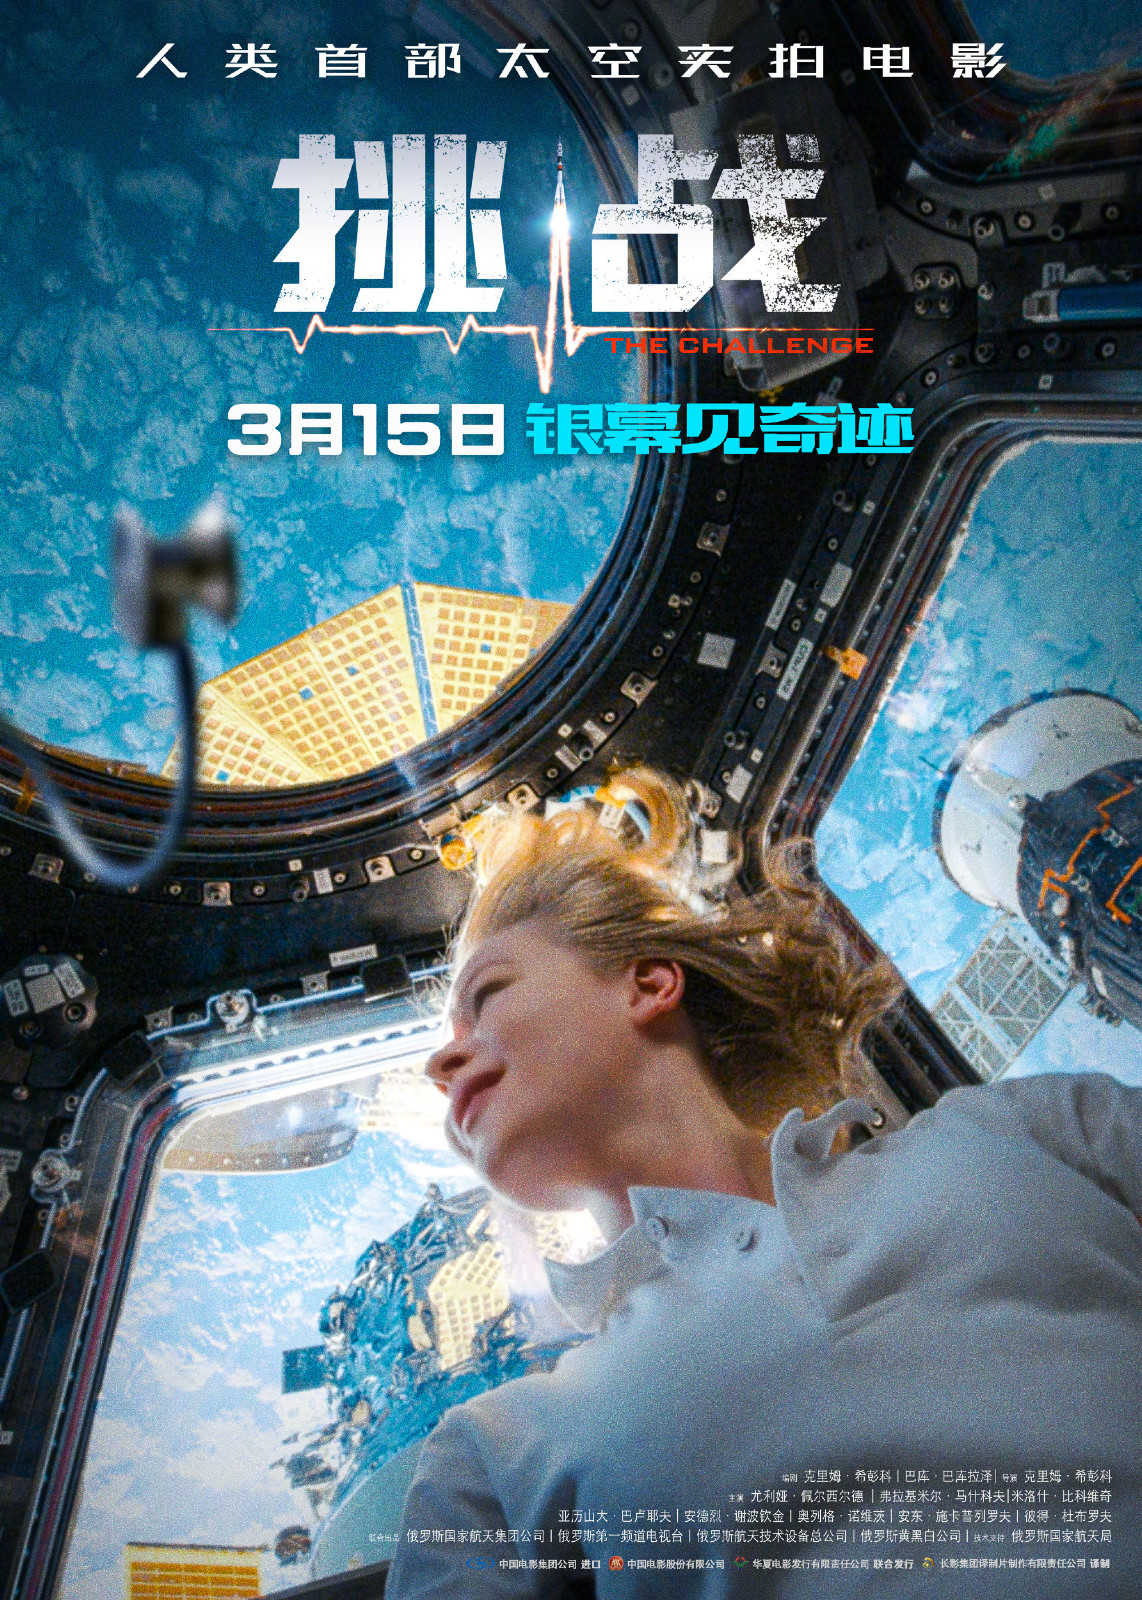 太空实拍影戏《应战》支布定档海报及剧照 3月15日本天上映